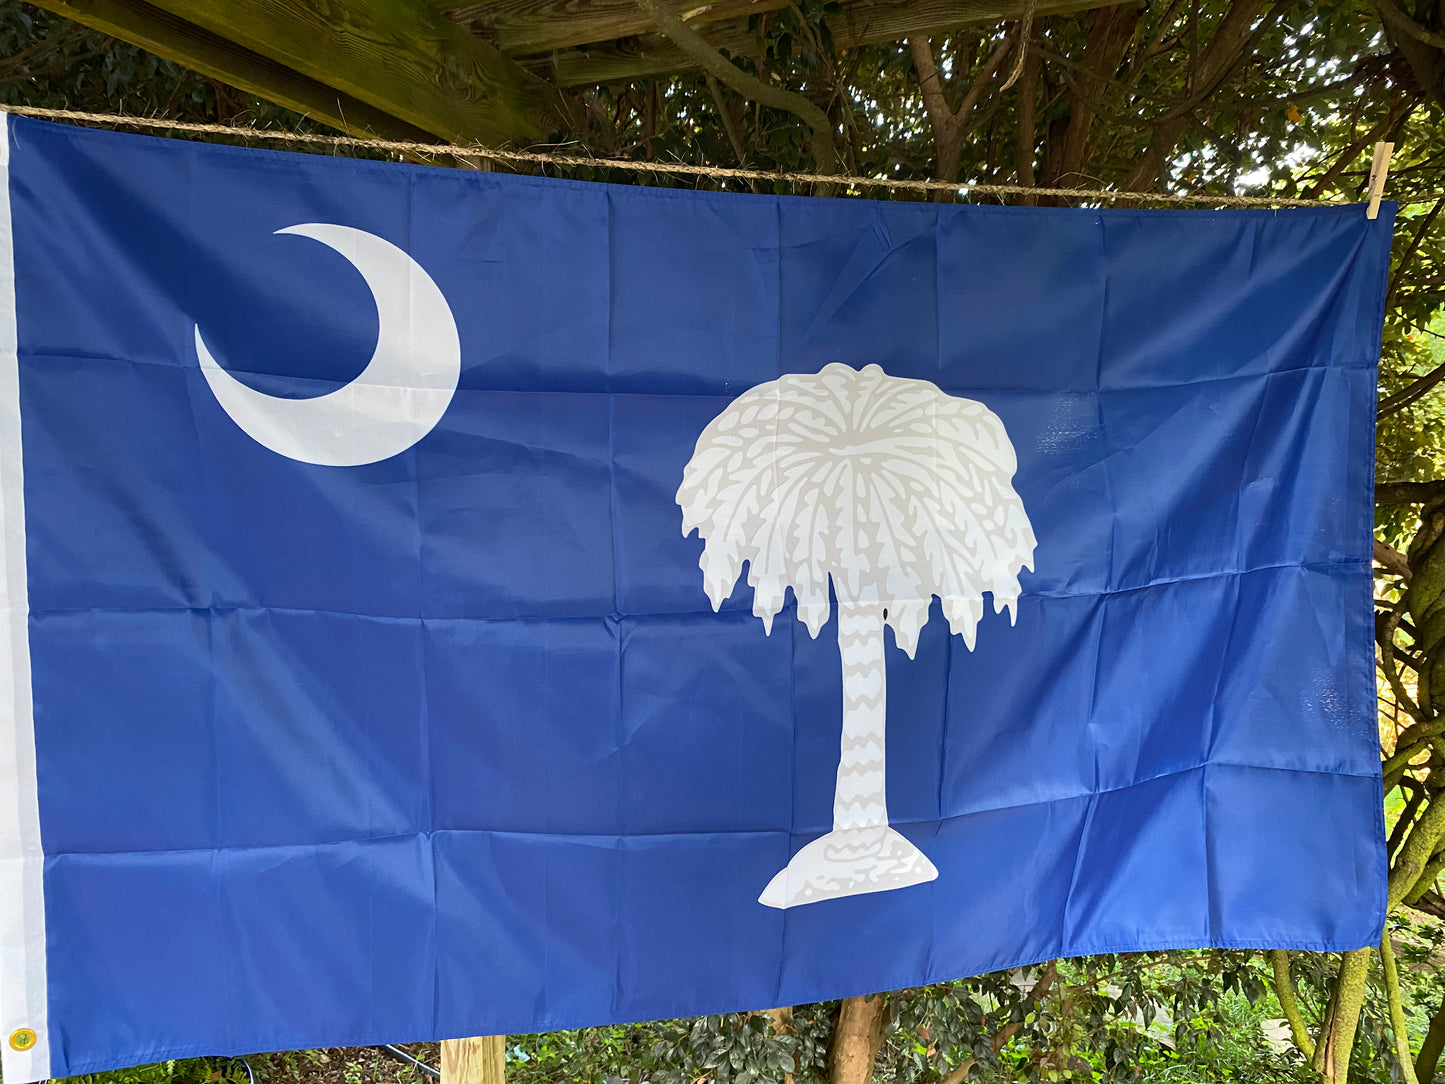 South Carolina "Palmetto Republic" House Flag